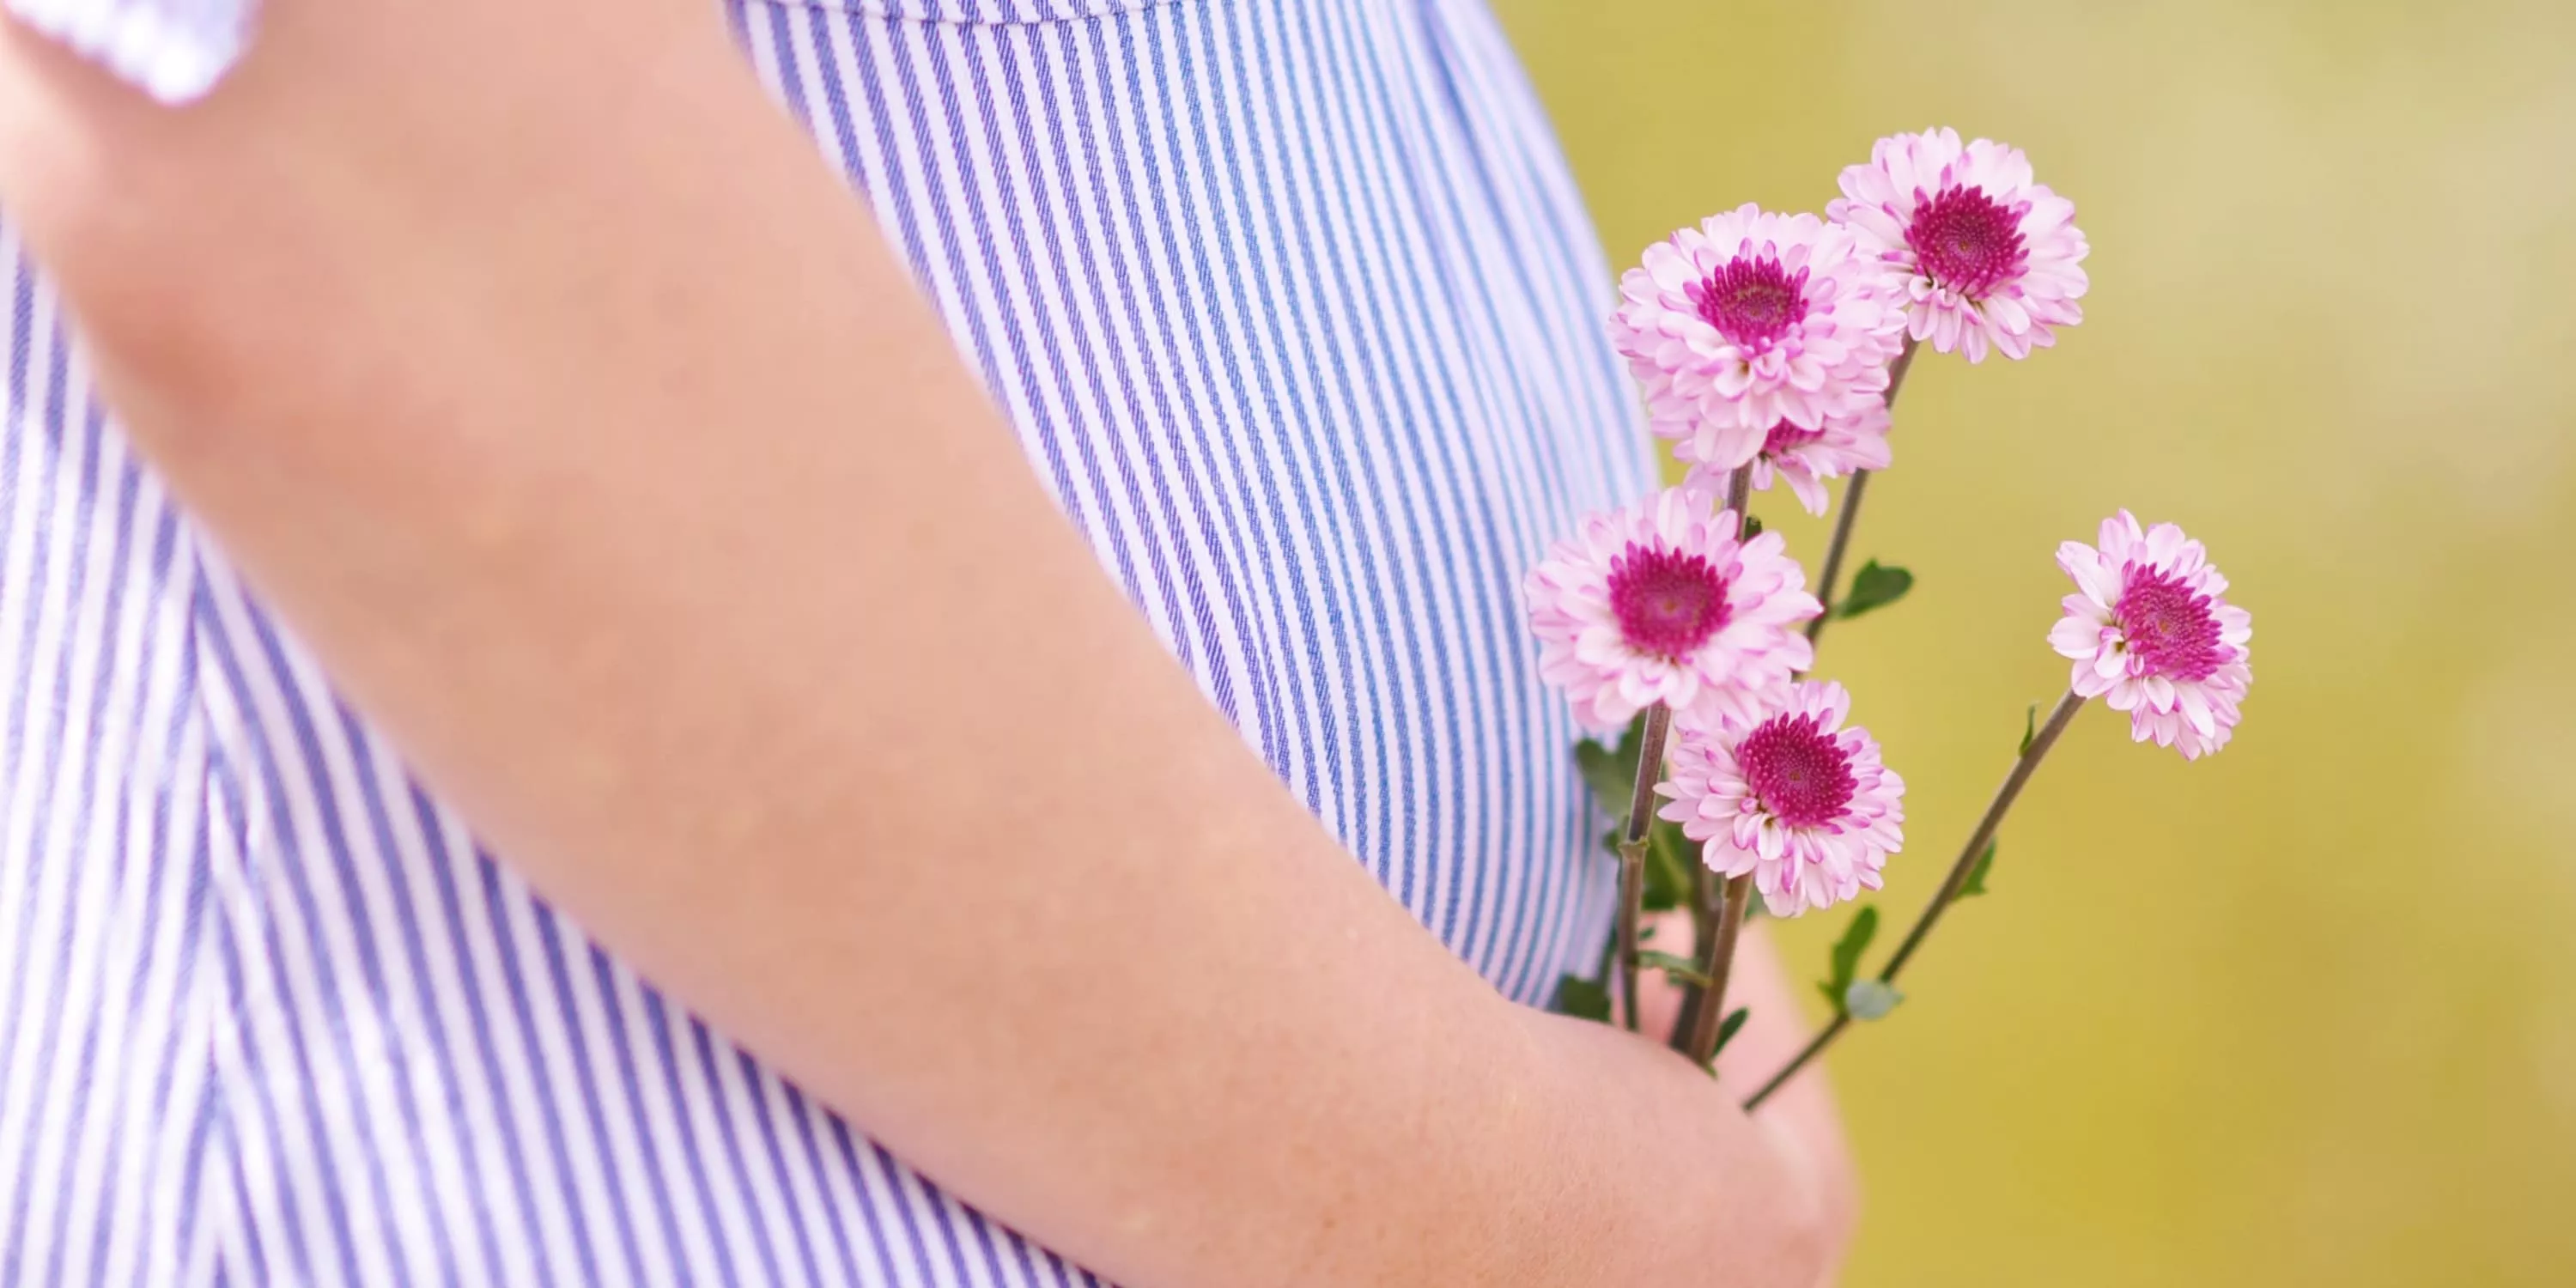 recorte de imagem da barriga de uma mulher grávida que está segurando flores